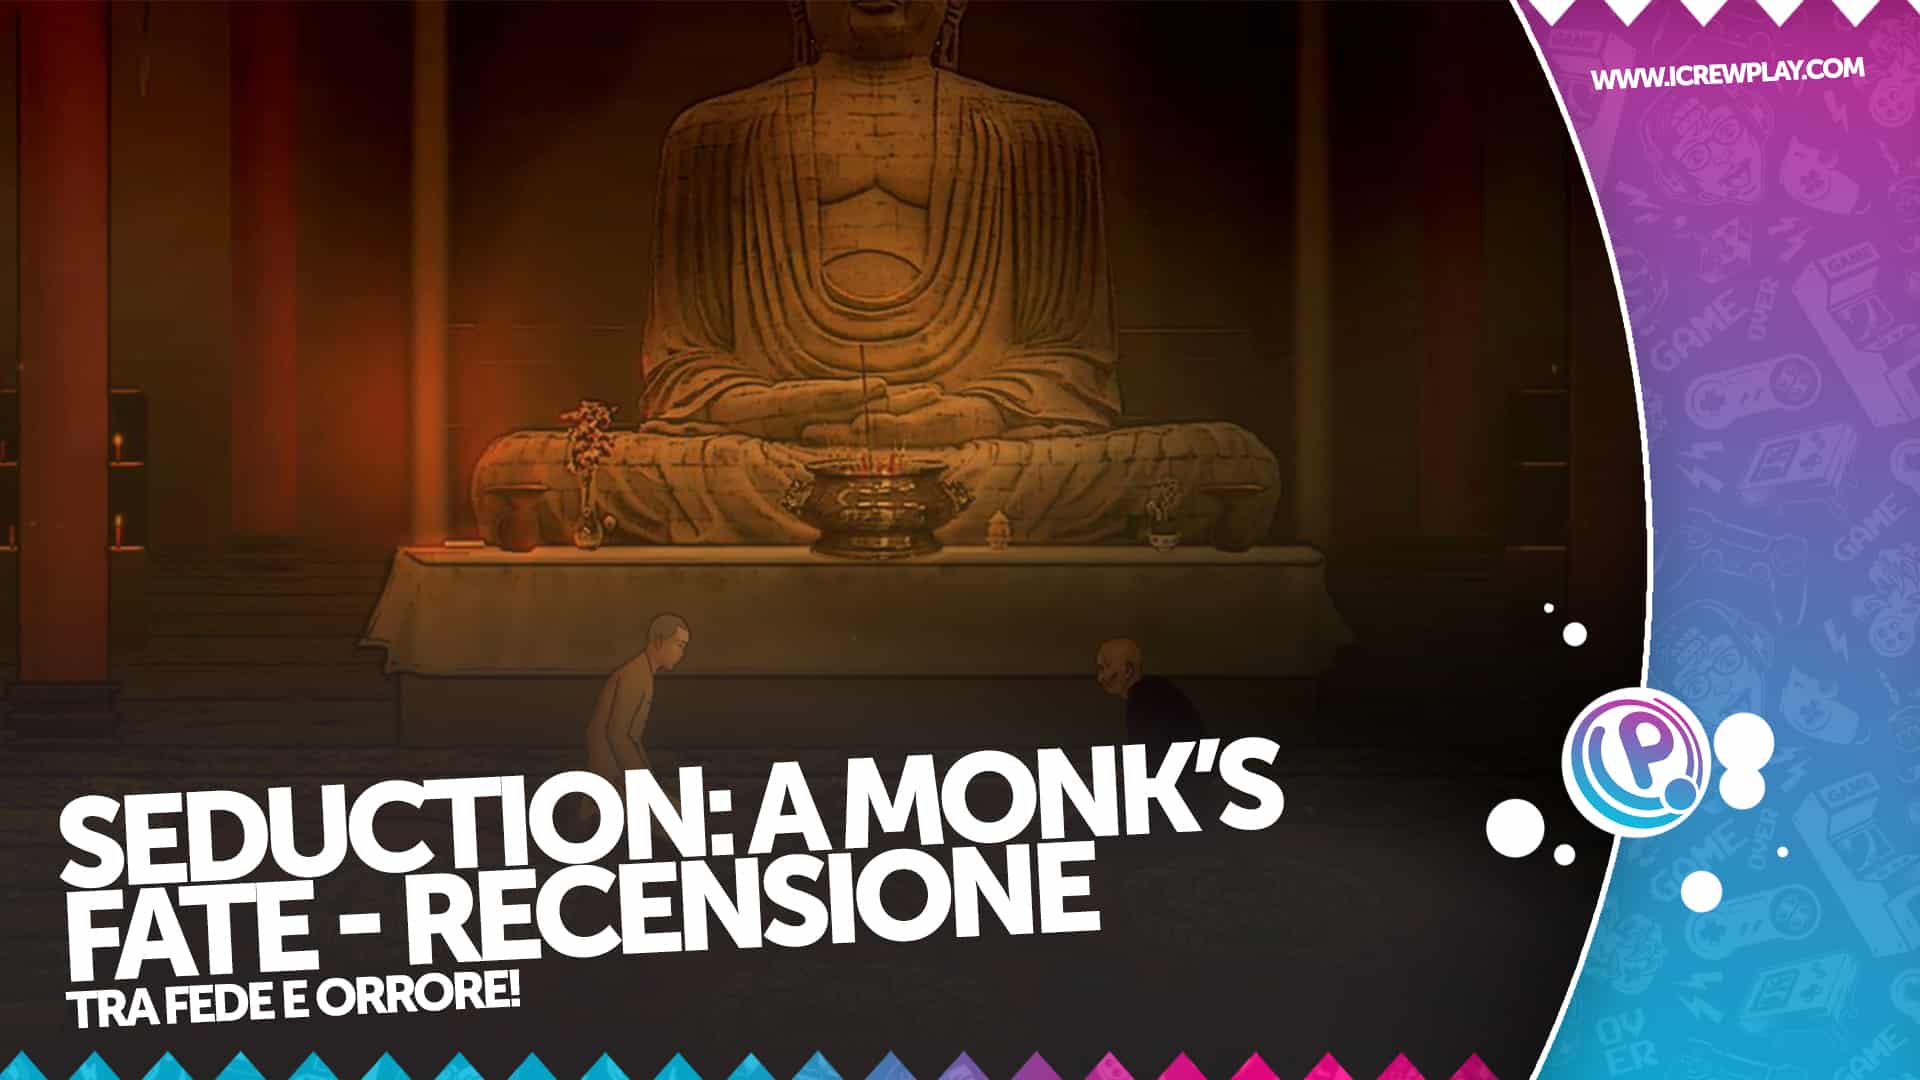 Seduction: A Monk's Fate - Recensione per Nintendo Switch 6